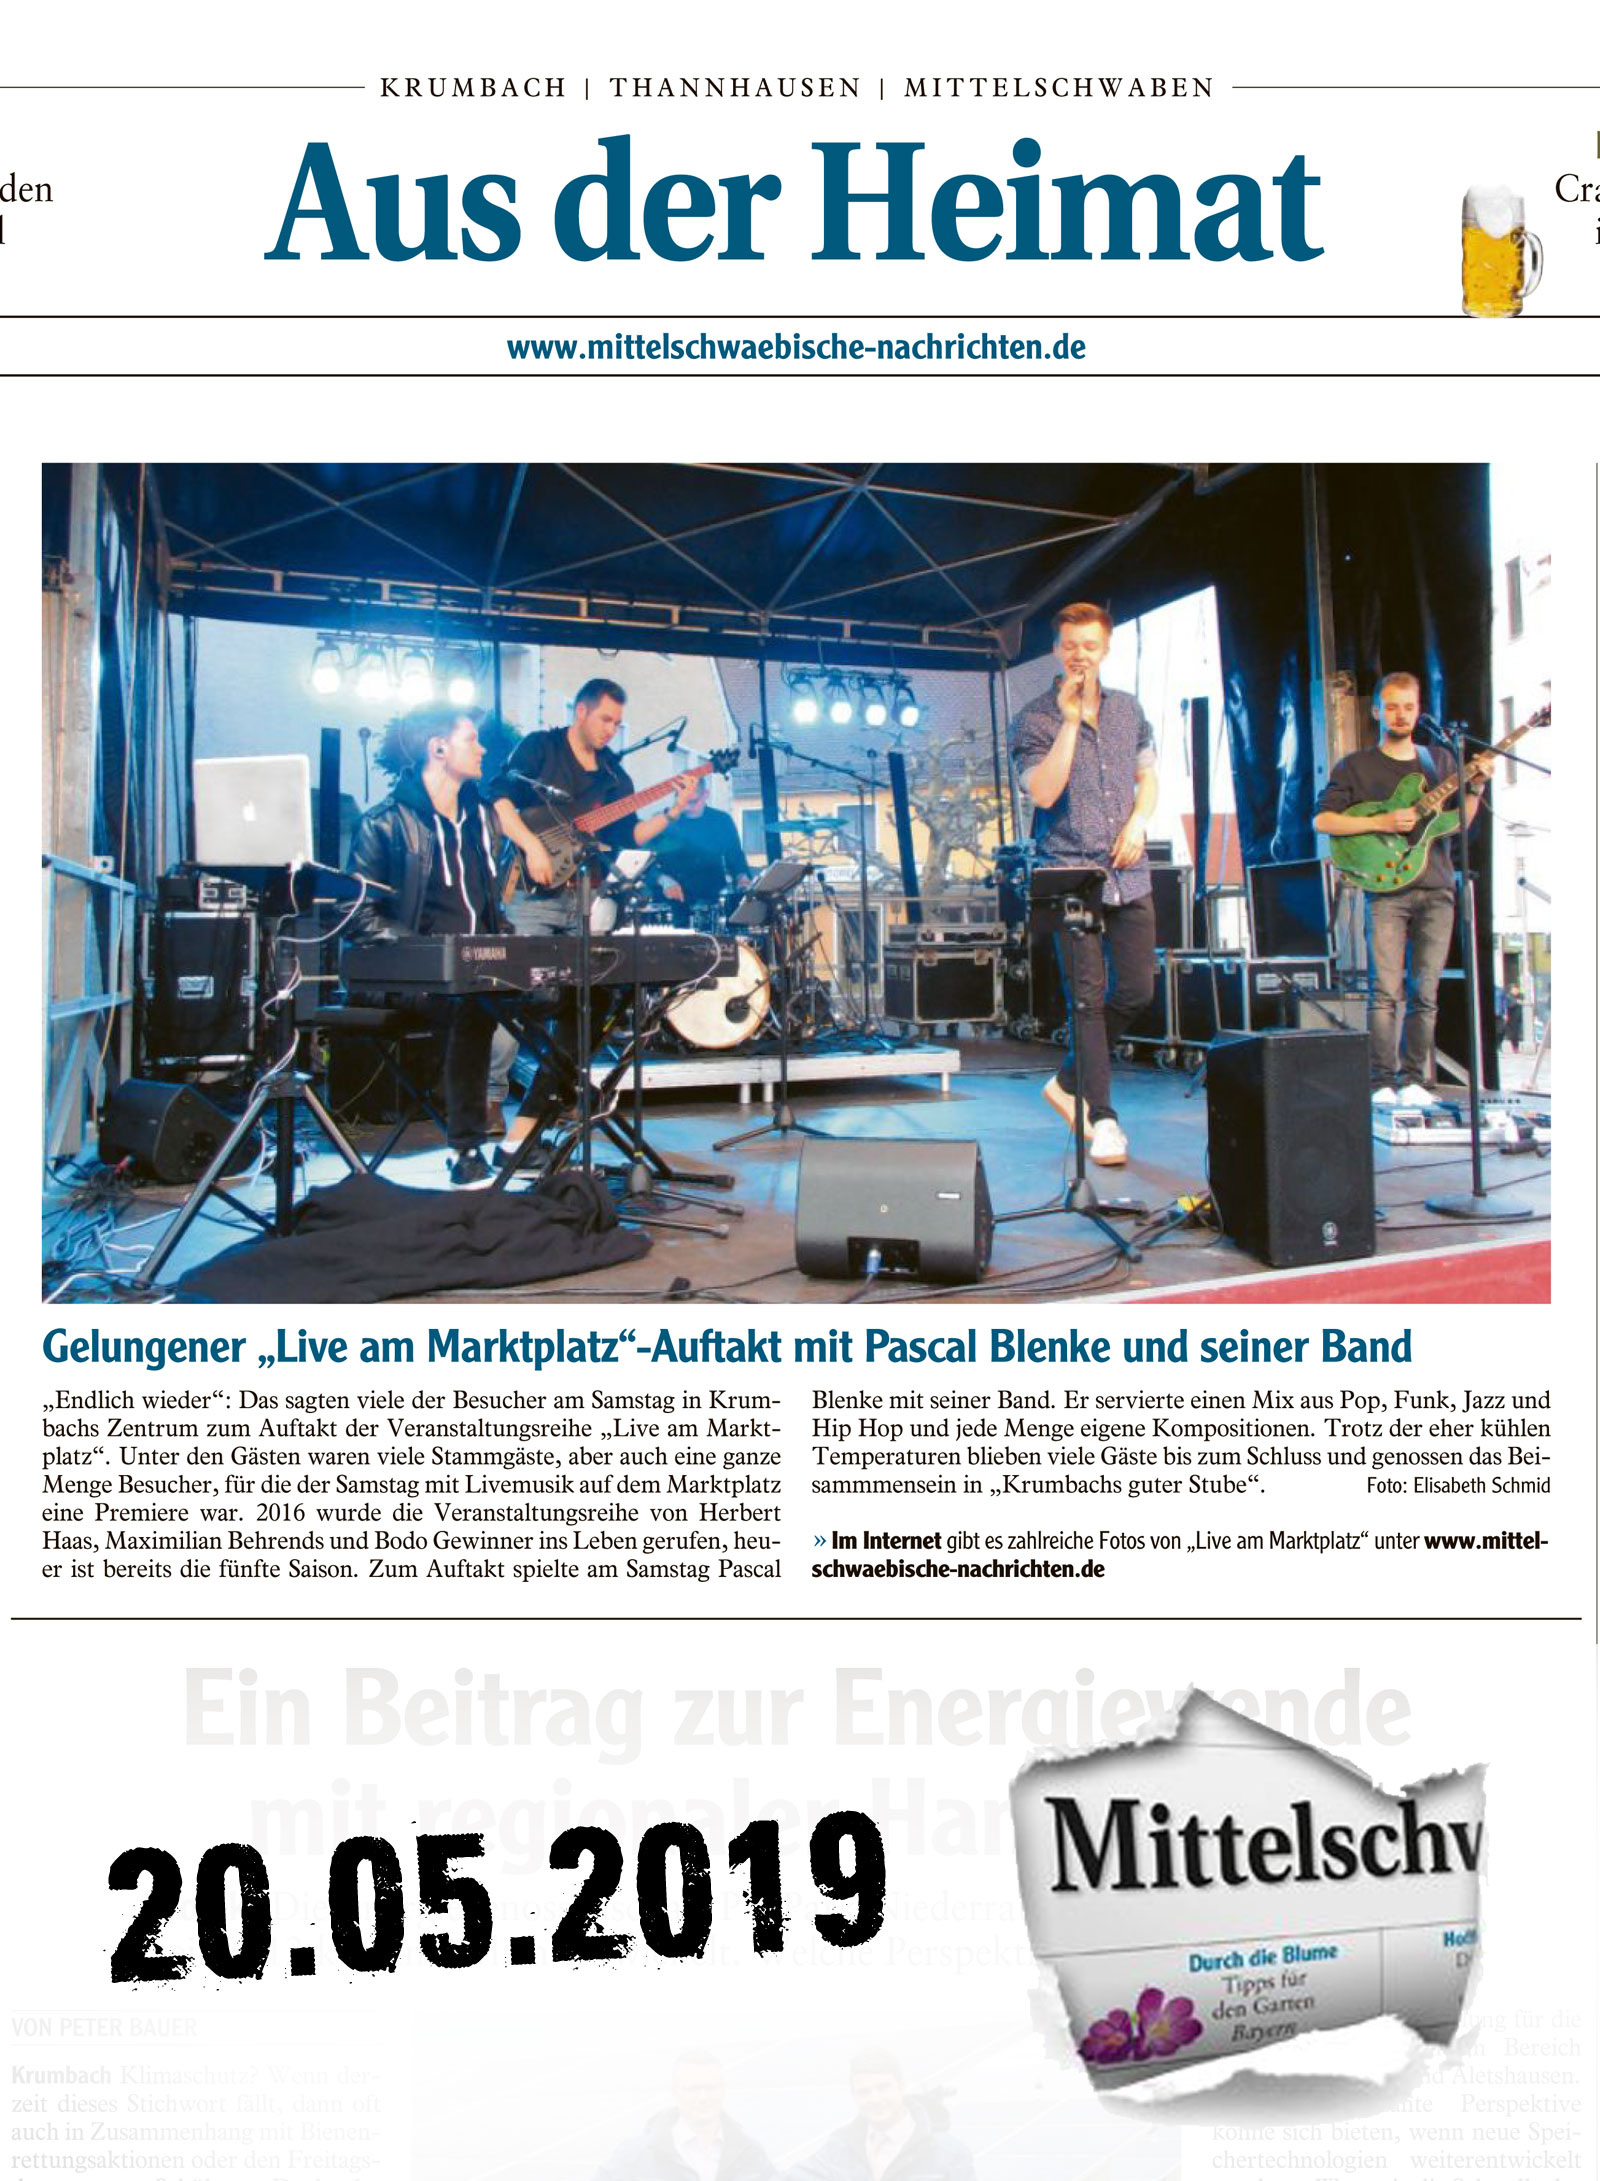 Mittelschwaebische Nachrichten vom 20.05.2019 "live am Marktplatz" gelungener Auftakt mit Pascal Blenke